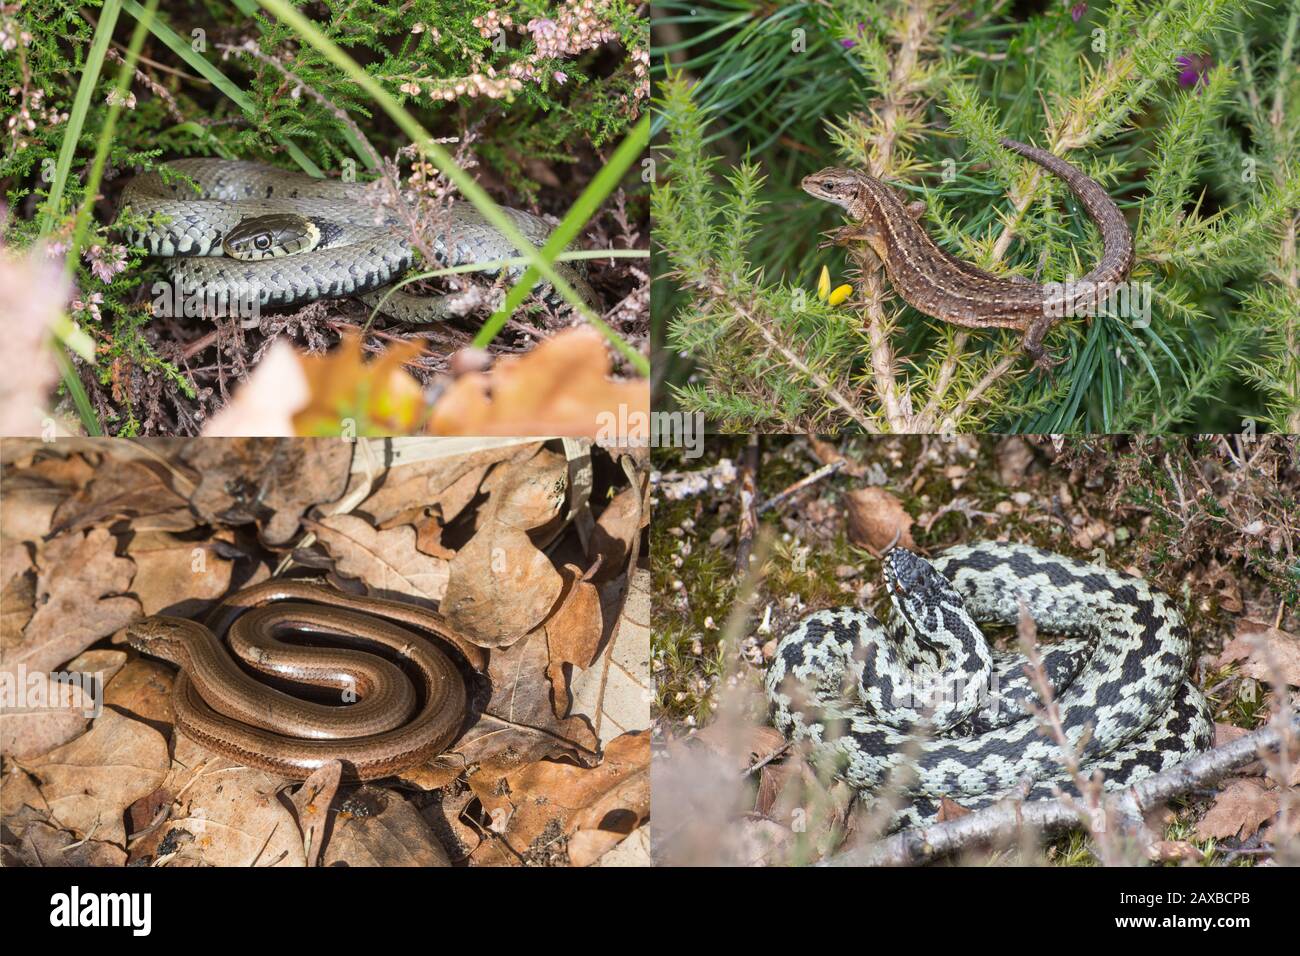 Zusammengesetztes Bild britischer Reptilienarten (Reptilien aus Großbritannien), das die vier weit verbreiteten oder häufigsten Arten in ihrem natürlichen Lebensraum zeigt Stockfoto